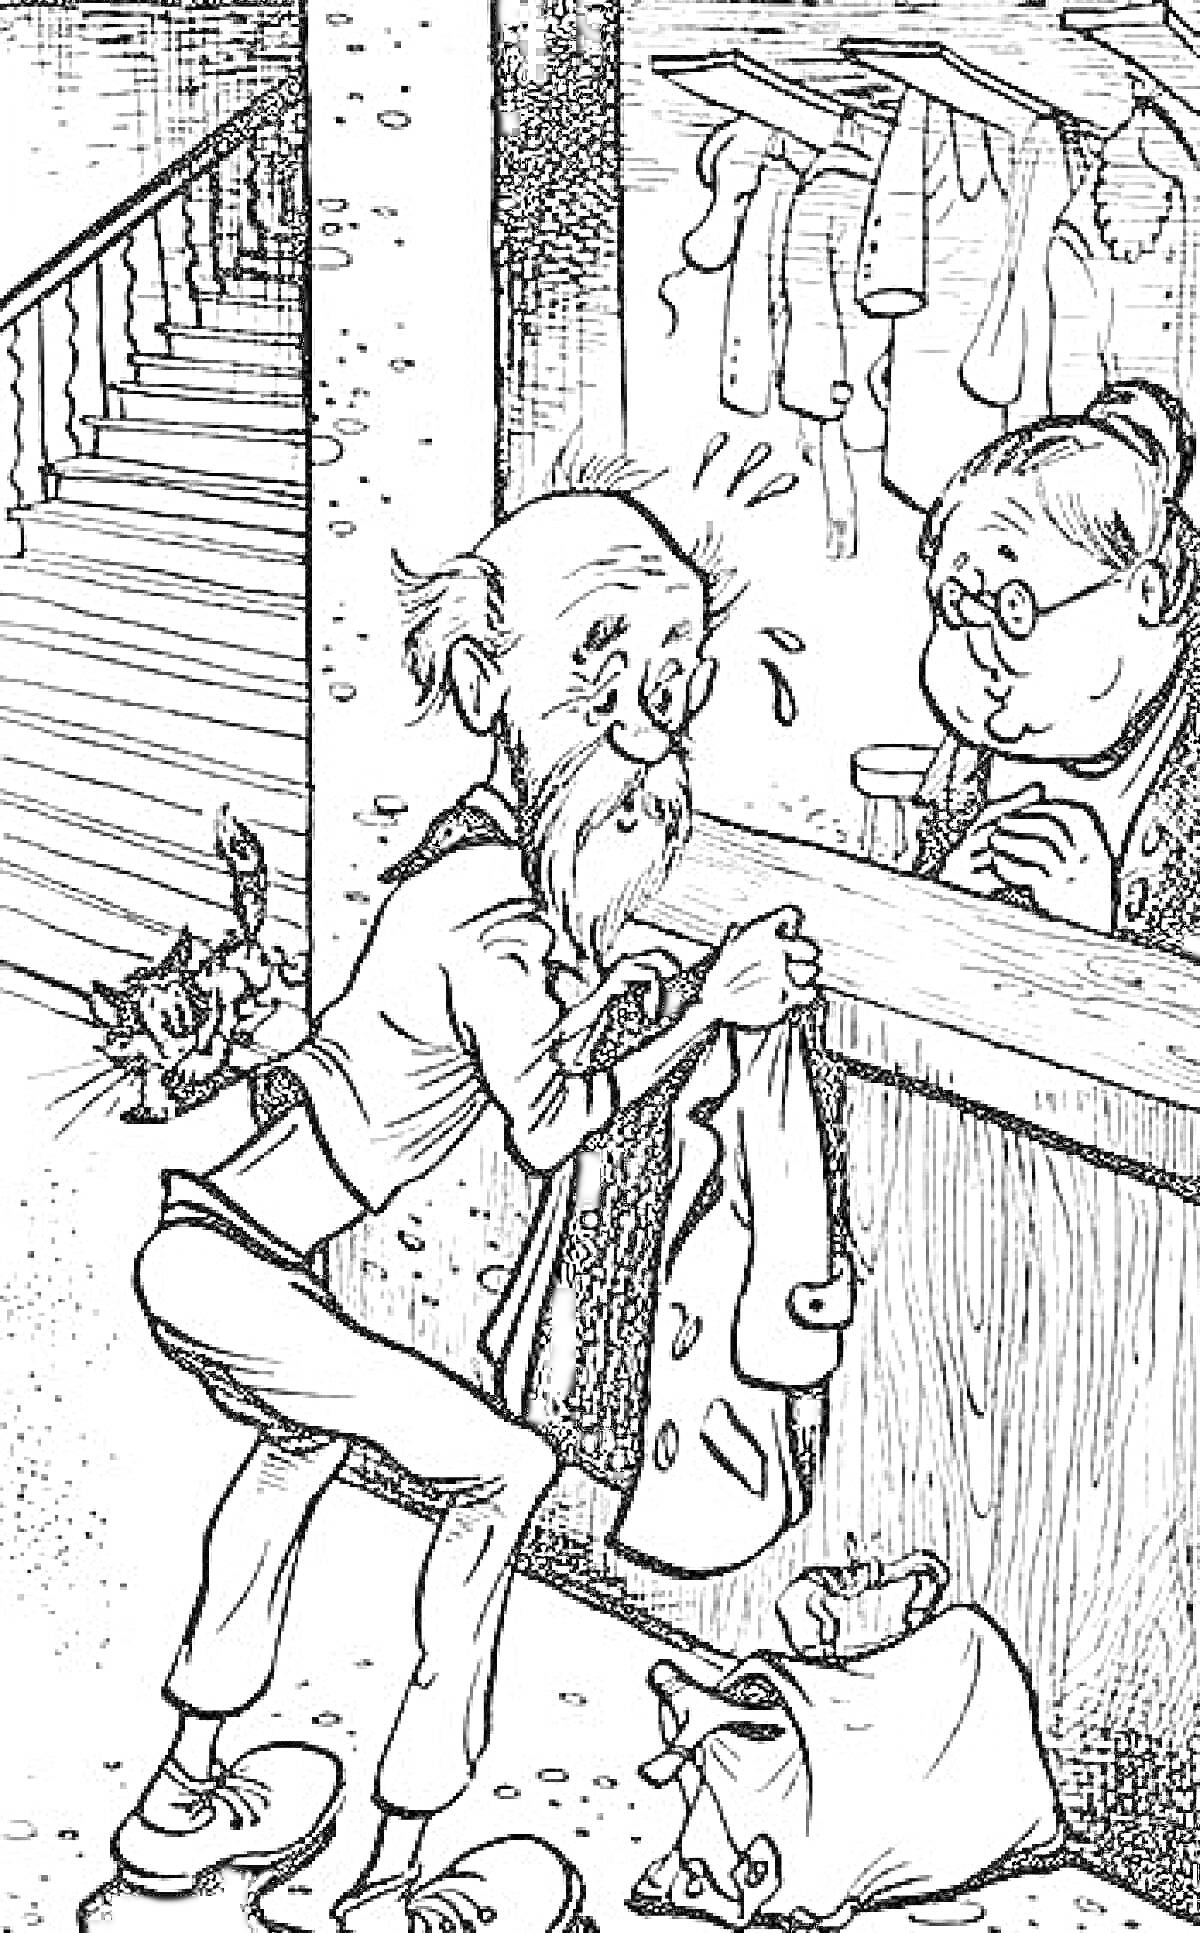 Раскраска Пожилой мужчина с бородой и очками, разговаривающий с женщиной через прилавок, из кармана показывается жук, на фоне лестница и висящие часы